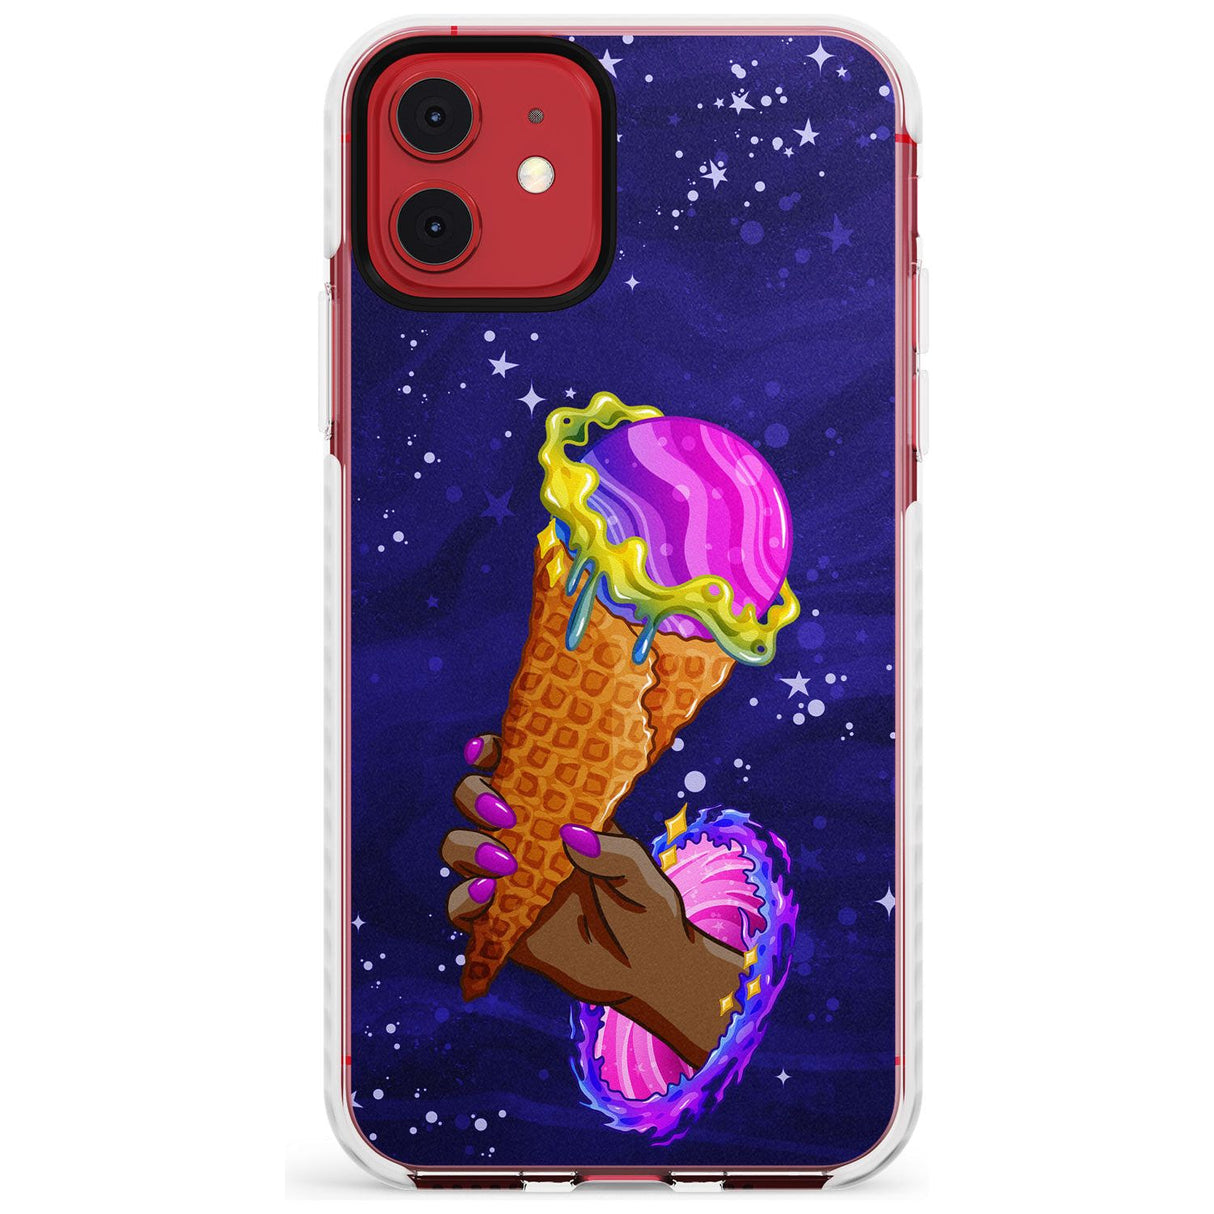 Interdimensional Ice Cream Impact Phone Case for iPhone 11